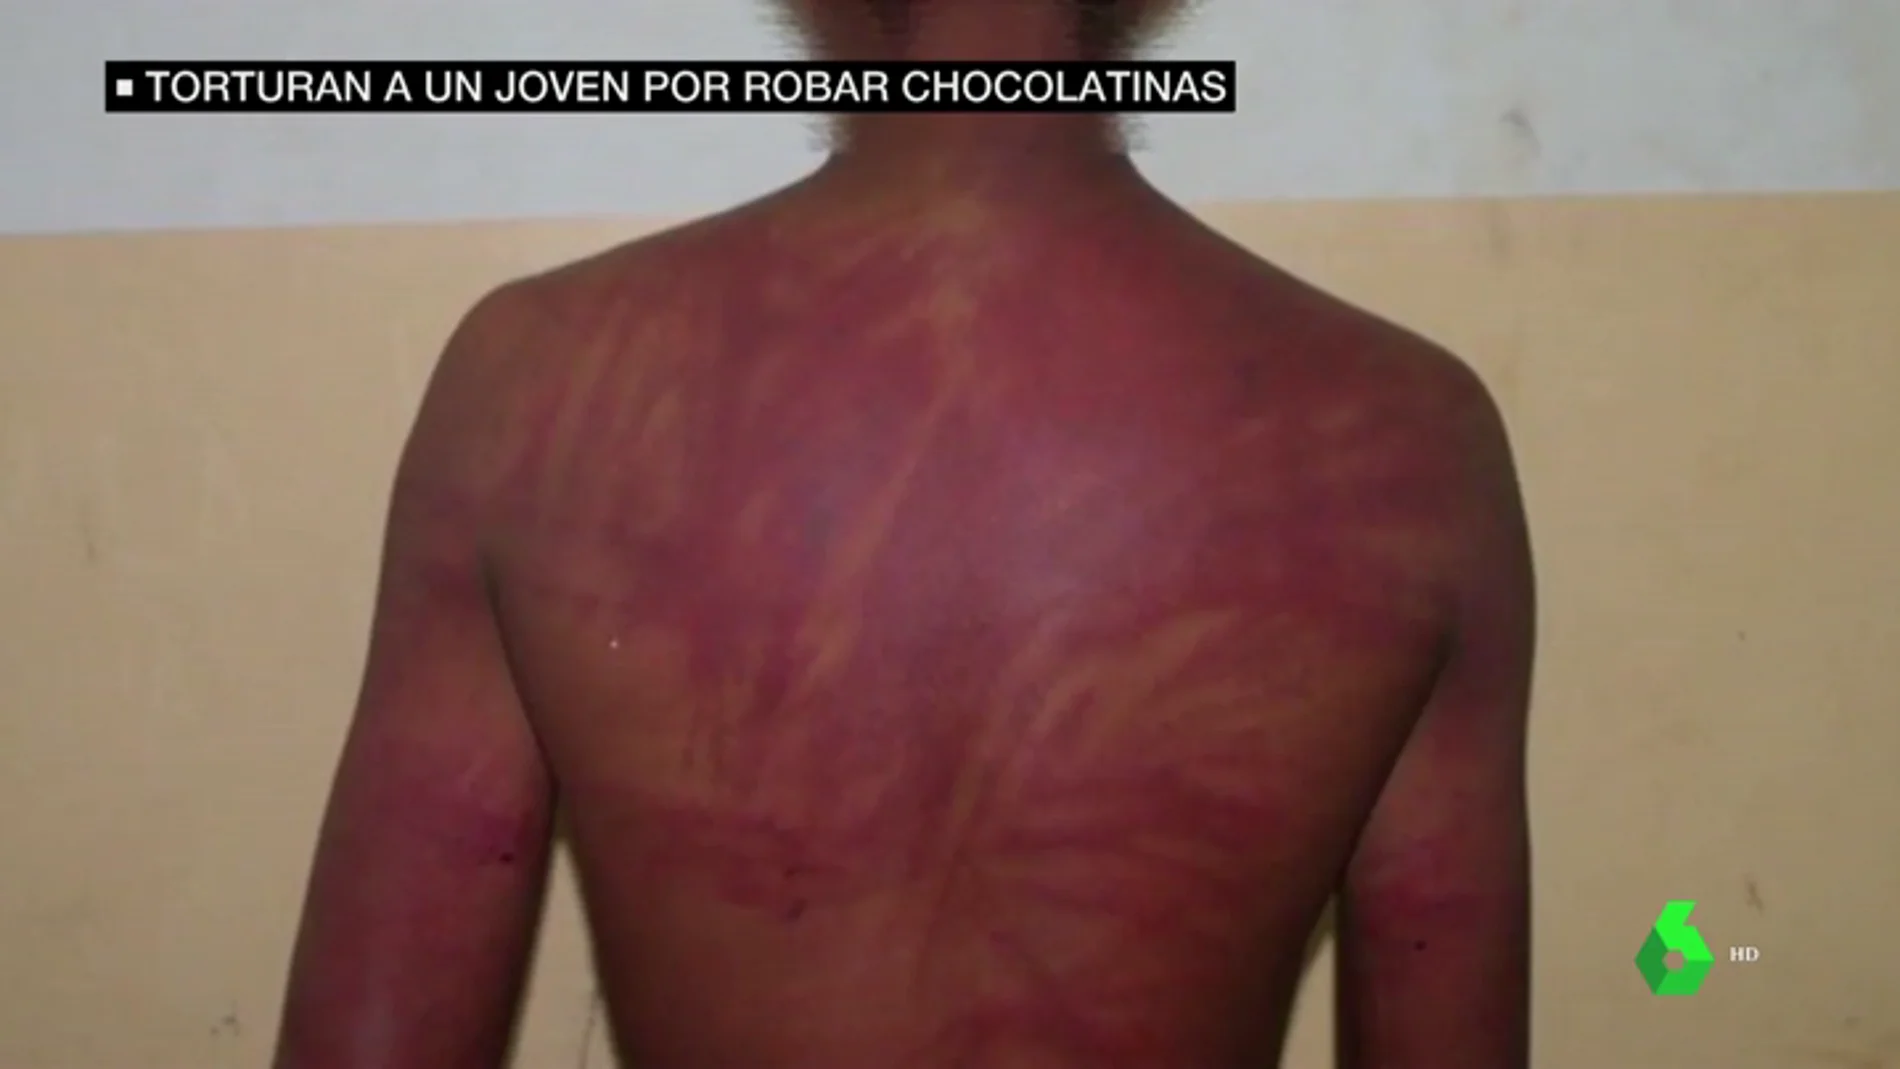 Latigazos y amenazas de muerte: graban la brutal tortura a un menor por robar chocolatinas